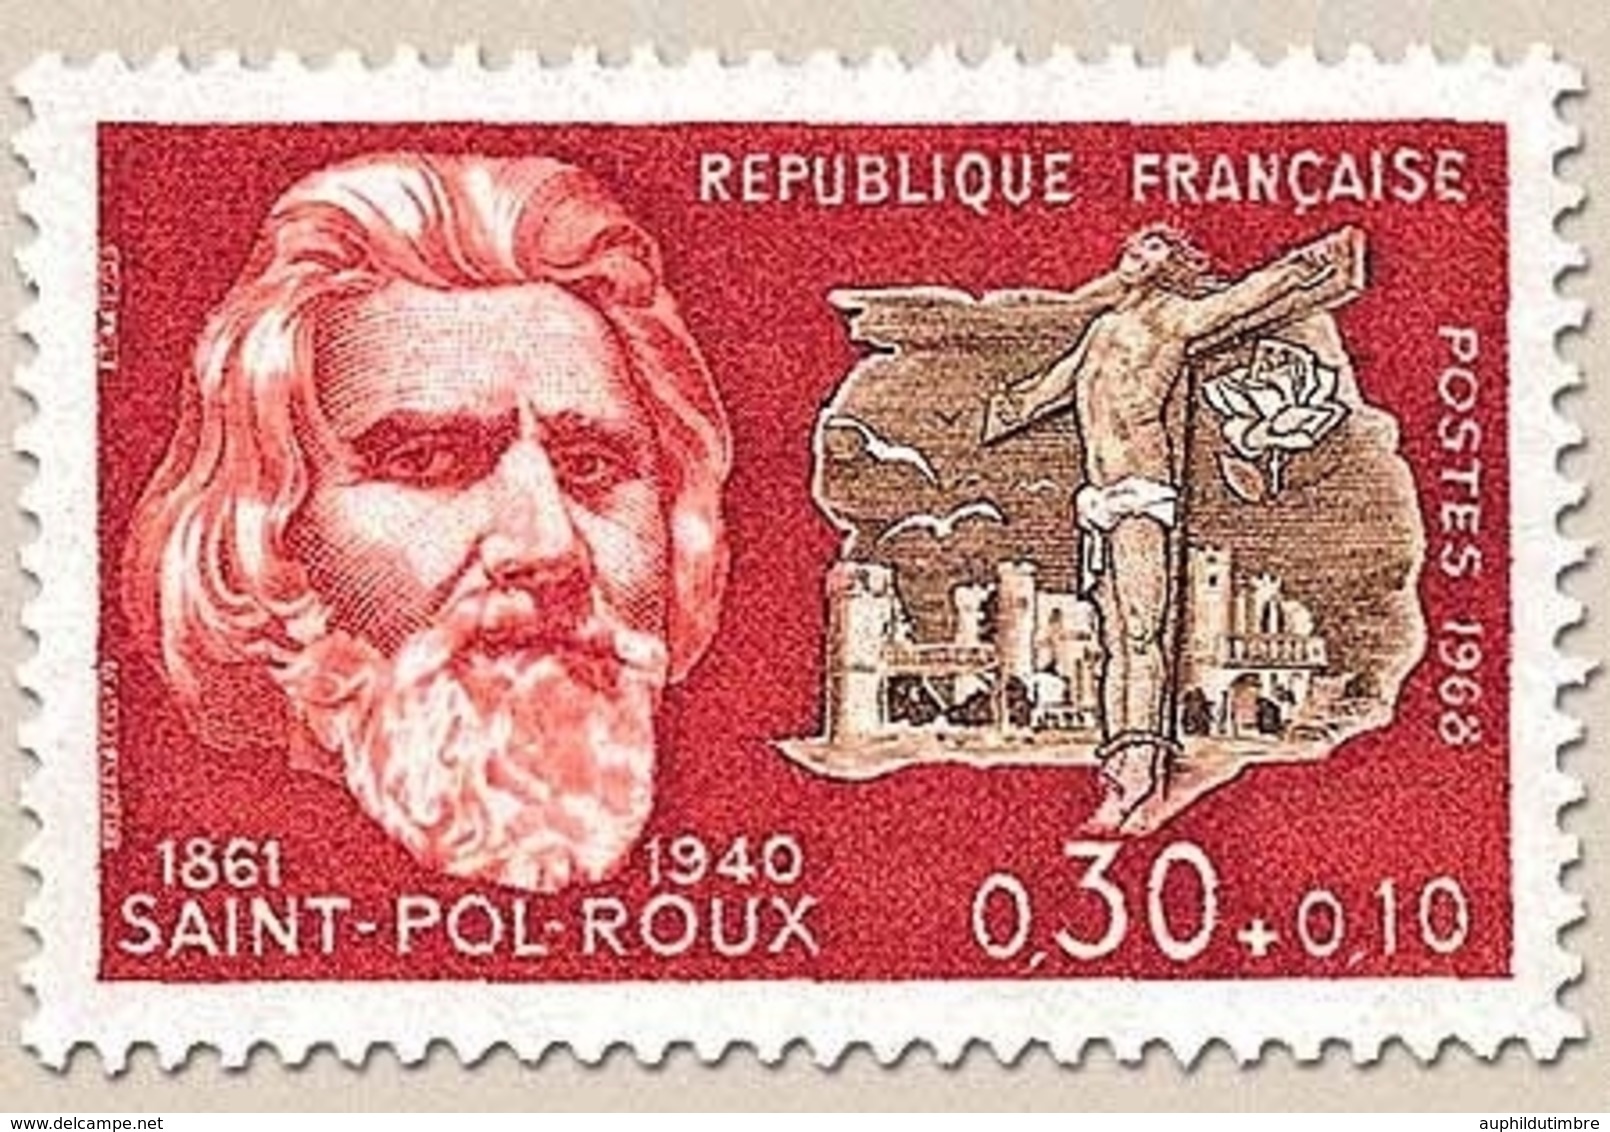 Célébrités. Paul-Pierre Roux, Dit Saint-Pol-Roux, Et Golgotha 30c. + 10c. Bistre-rouge Et Sépia Y1552 - Unused Stamps